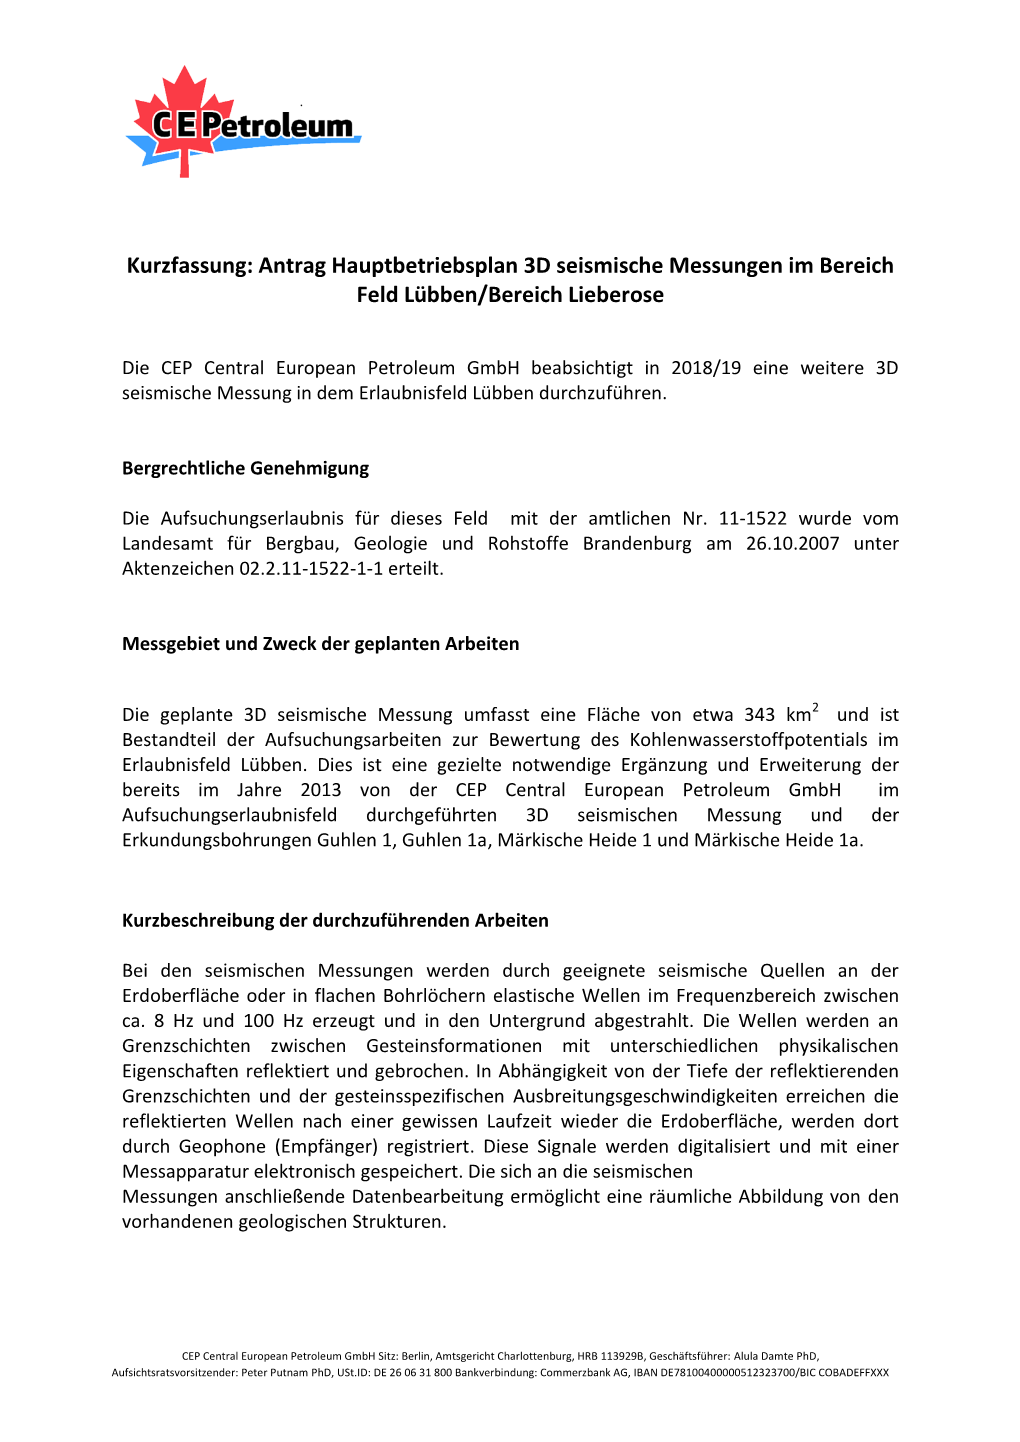 Kurzfassung: Antrag Hauptbetriebsplan 3D Seismische Messungen Im Bereich Feld Lübben/Bereich Lieberose